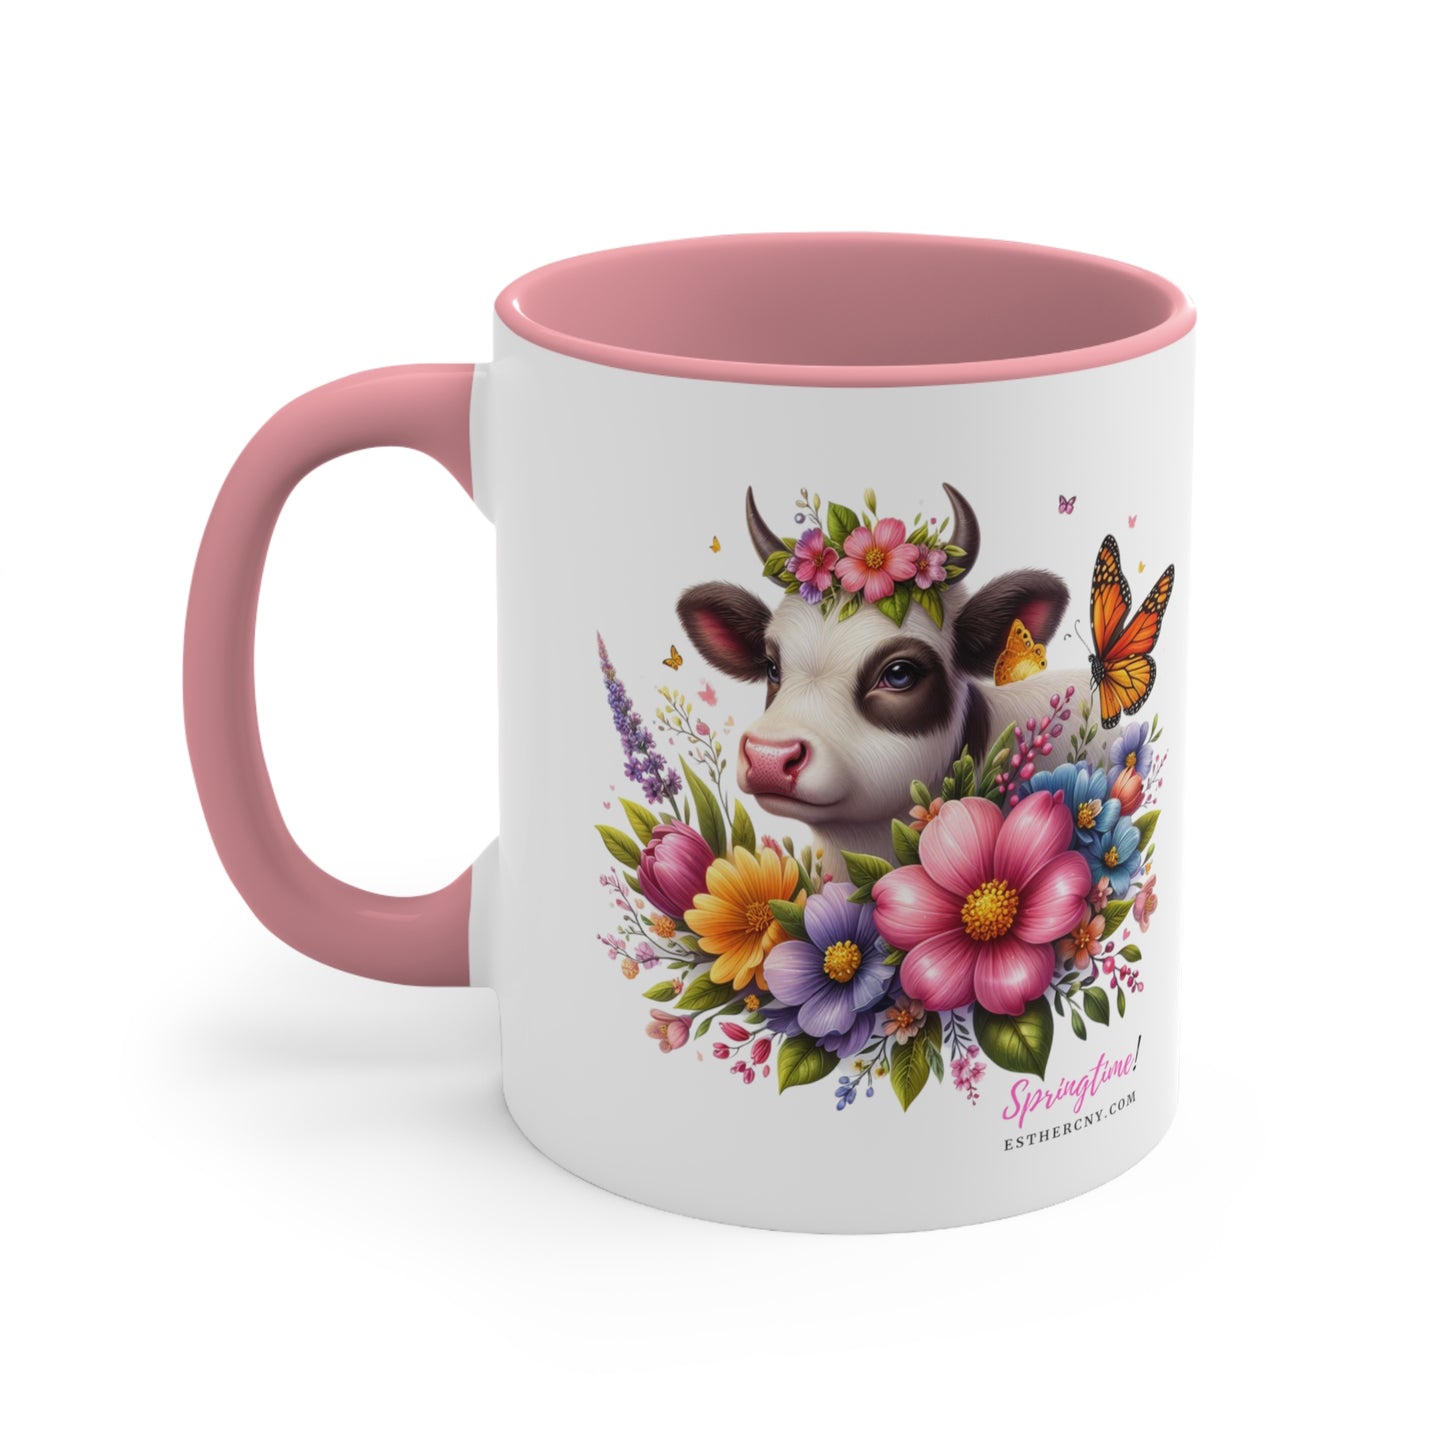 Springtime Cow Accent Coffee Mug, 11oz